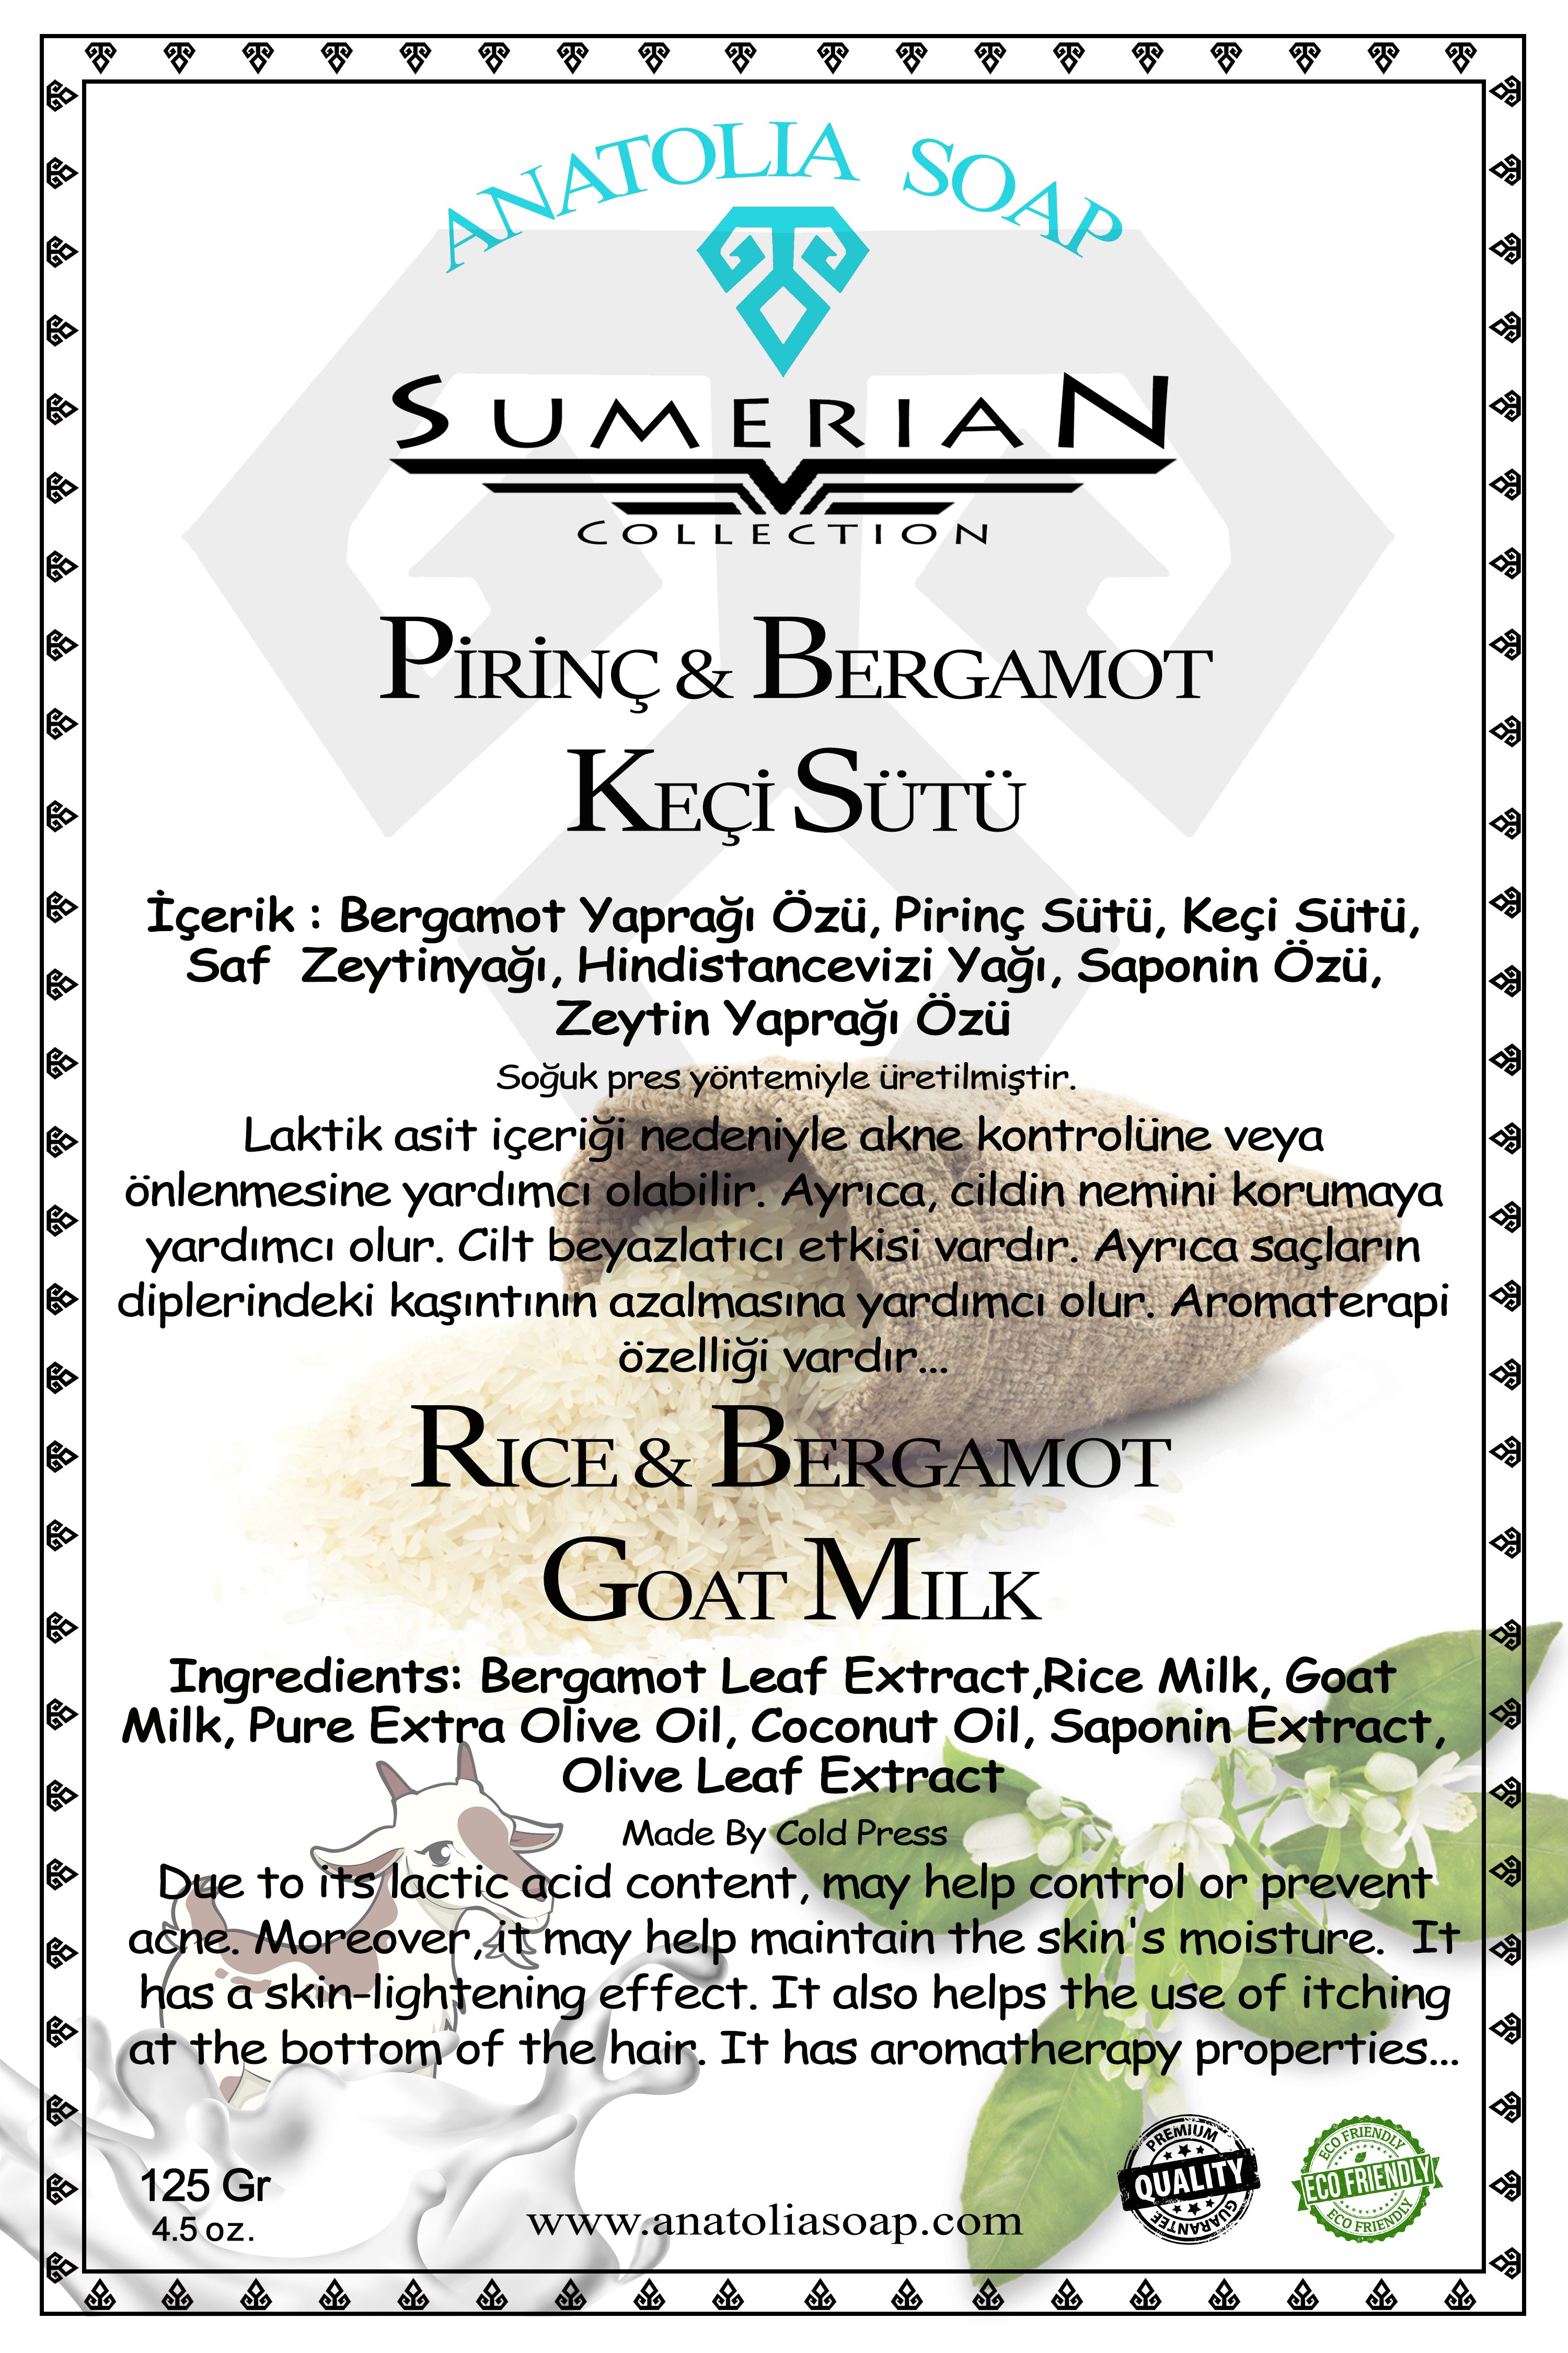 Sumerian Koleksiyonu Pirinç Keçi Sütü Bergamot Sabunu ile Cildinizi Beyazlatıp, Pürüzsüzleştirin.